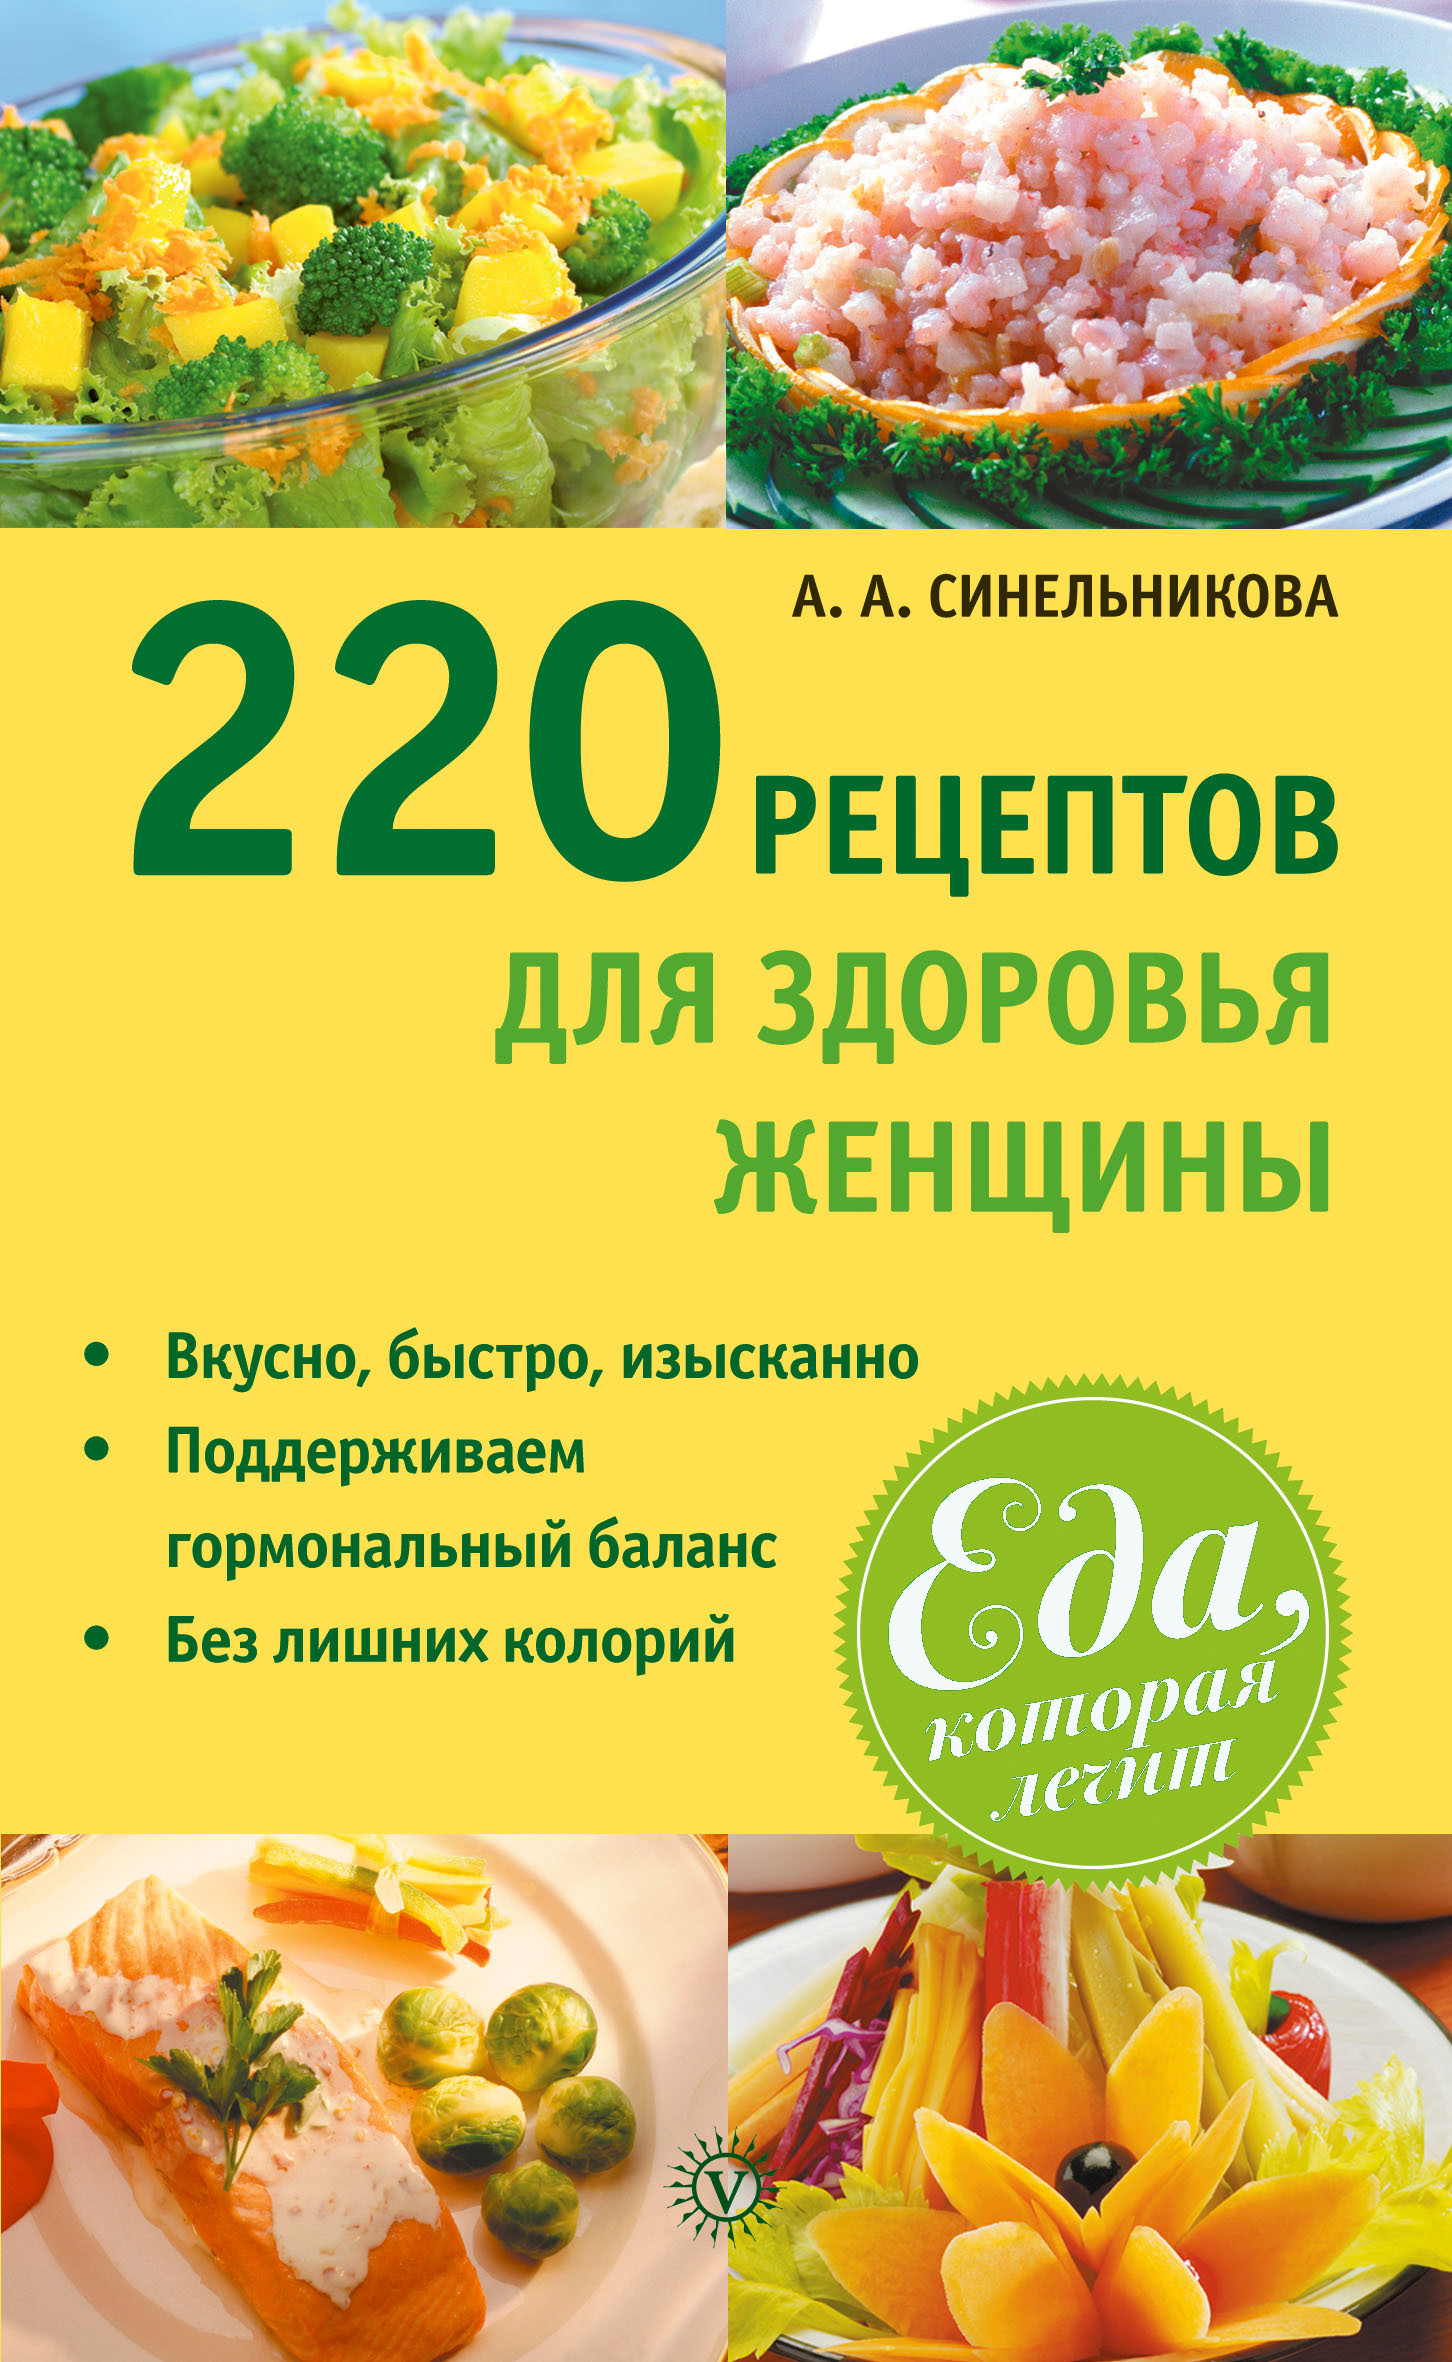 Книга 220 рецептов для здоровья женщины из серии Еда, которая лечит, созданная А. Синельникова, может относится к жанру Здоровье, Кулинария. Стоимость электронной книги 220 рецептов для здоровья женщины с идентификатором 10666562 составляет 69.90 руб.